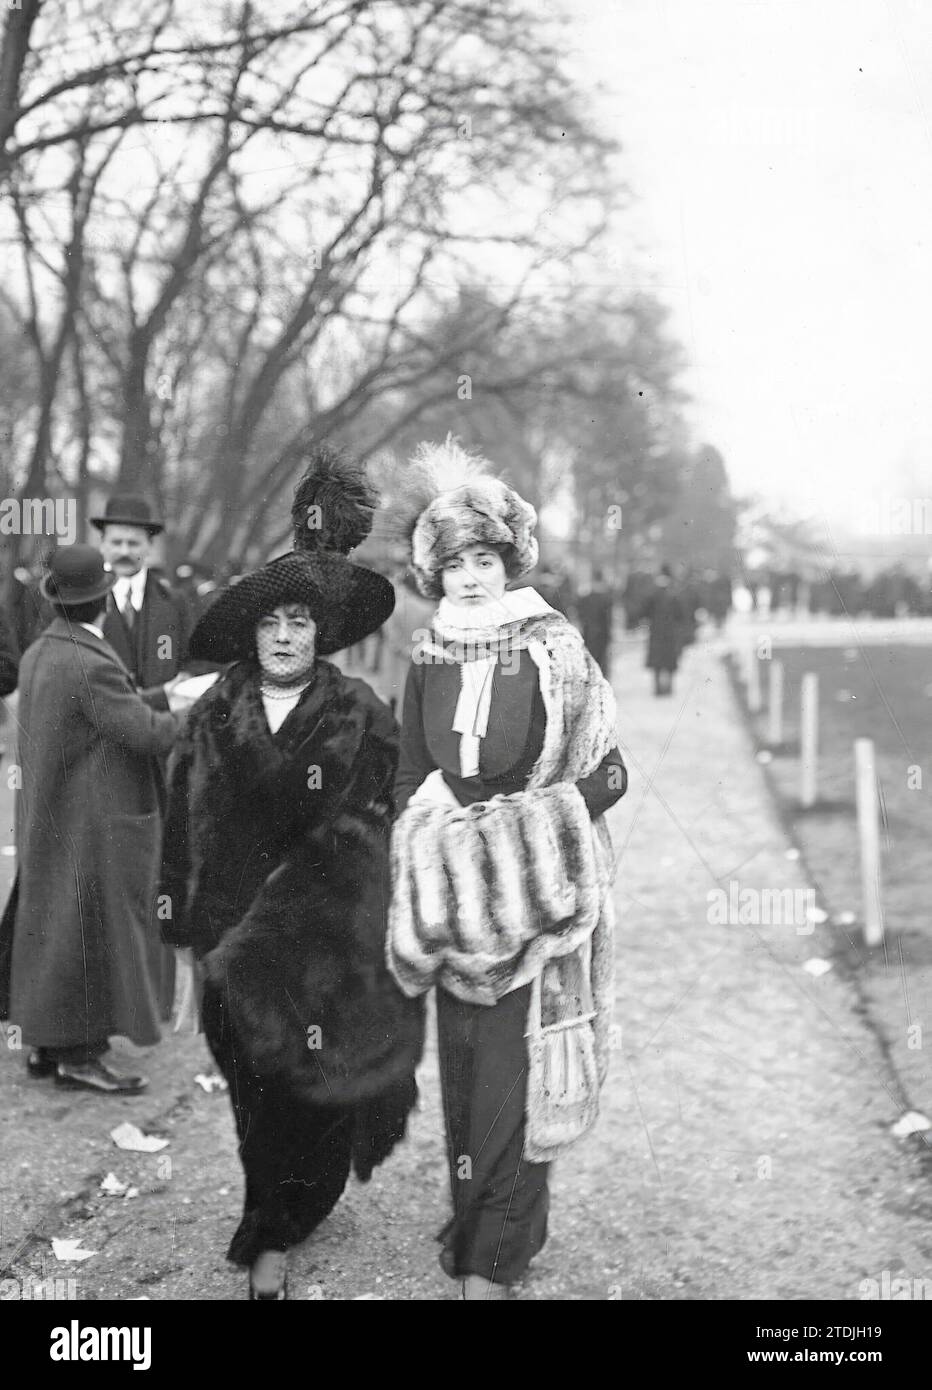 02/14/1912. Pariser Moden. Zwei elegante Mädchen in der neuesten Mode - Wiedereröffnung von Autteville. Quelle: Album / Archivo ABC / M. Rol Stockfoto